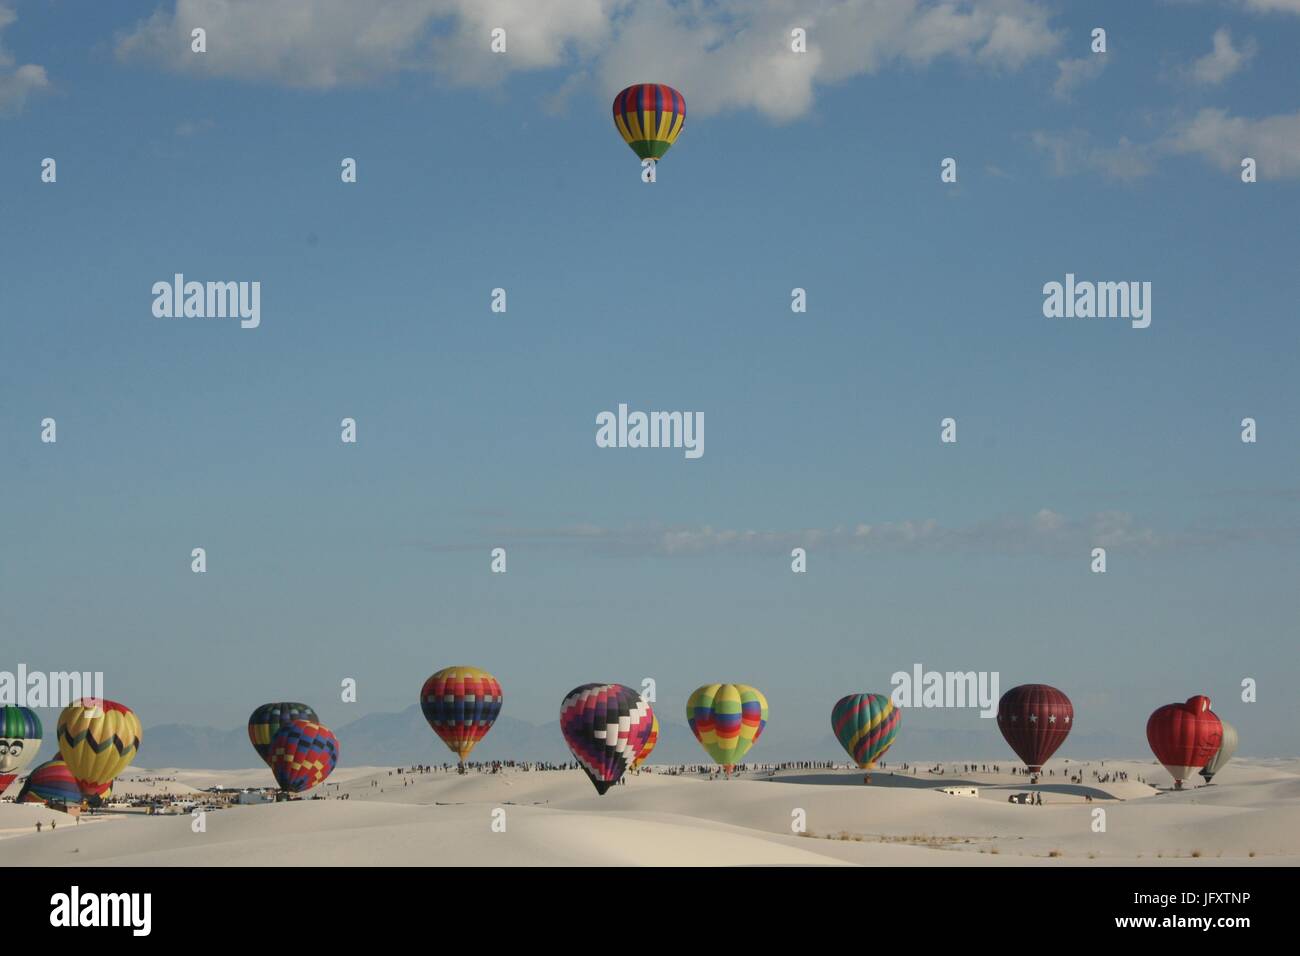 Bunte Heißluftballons bereiten Sie aus den Sanddünen im White Sands National Monument während der jährlichen White Sands Ballon Invitational 17. September 2011 in Alamogordo, New Mexico starten. (Foto von NPS Foto via Planetpix) Stockfoto